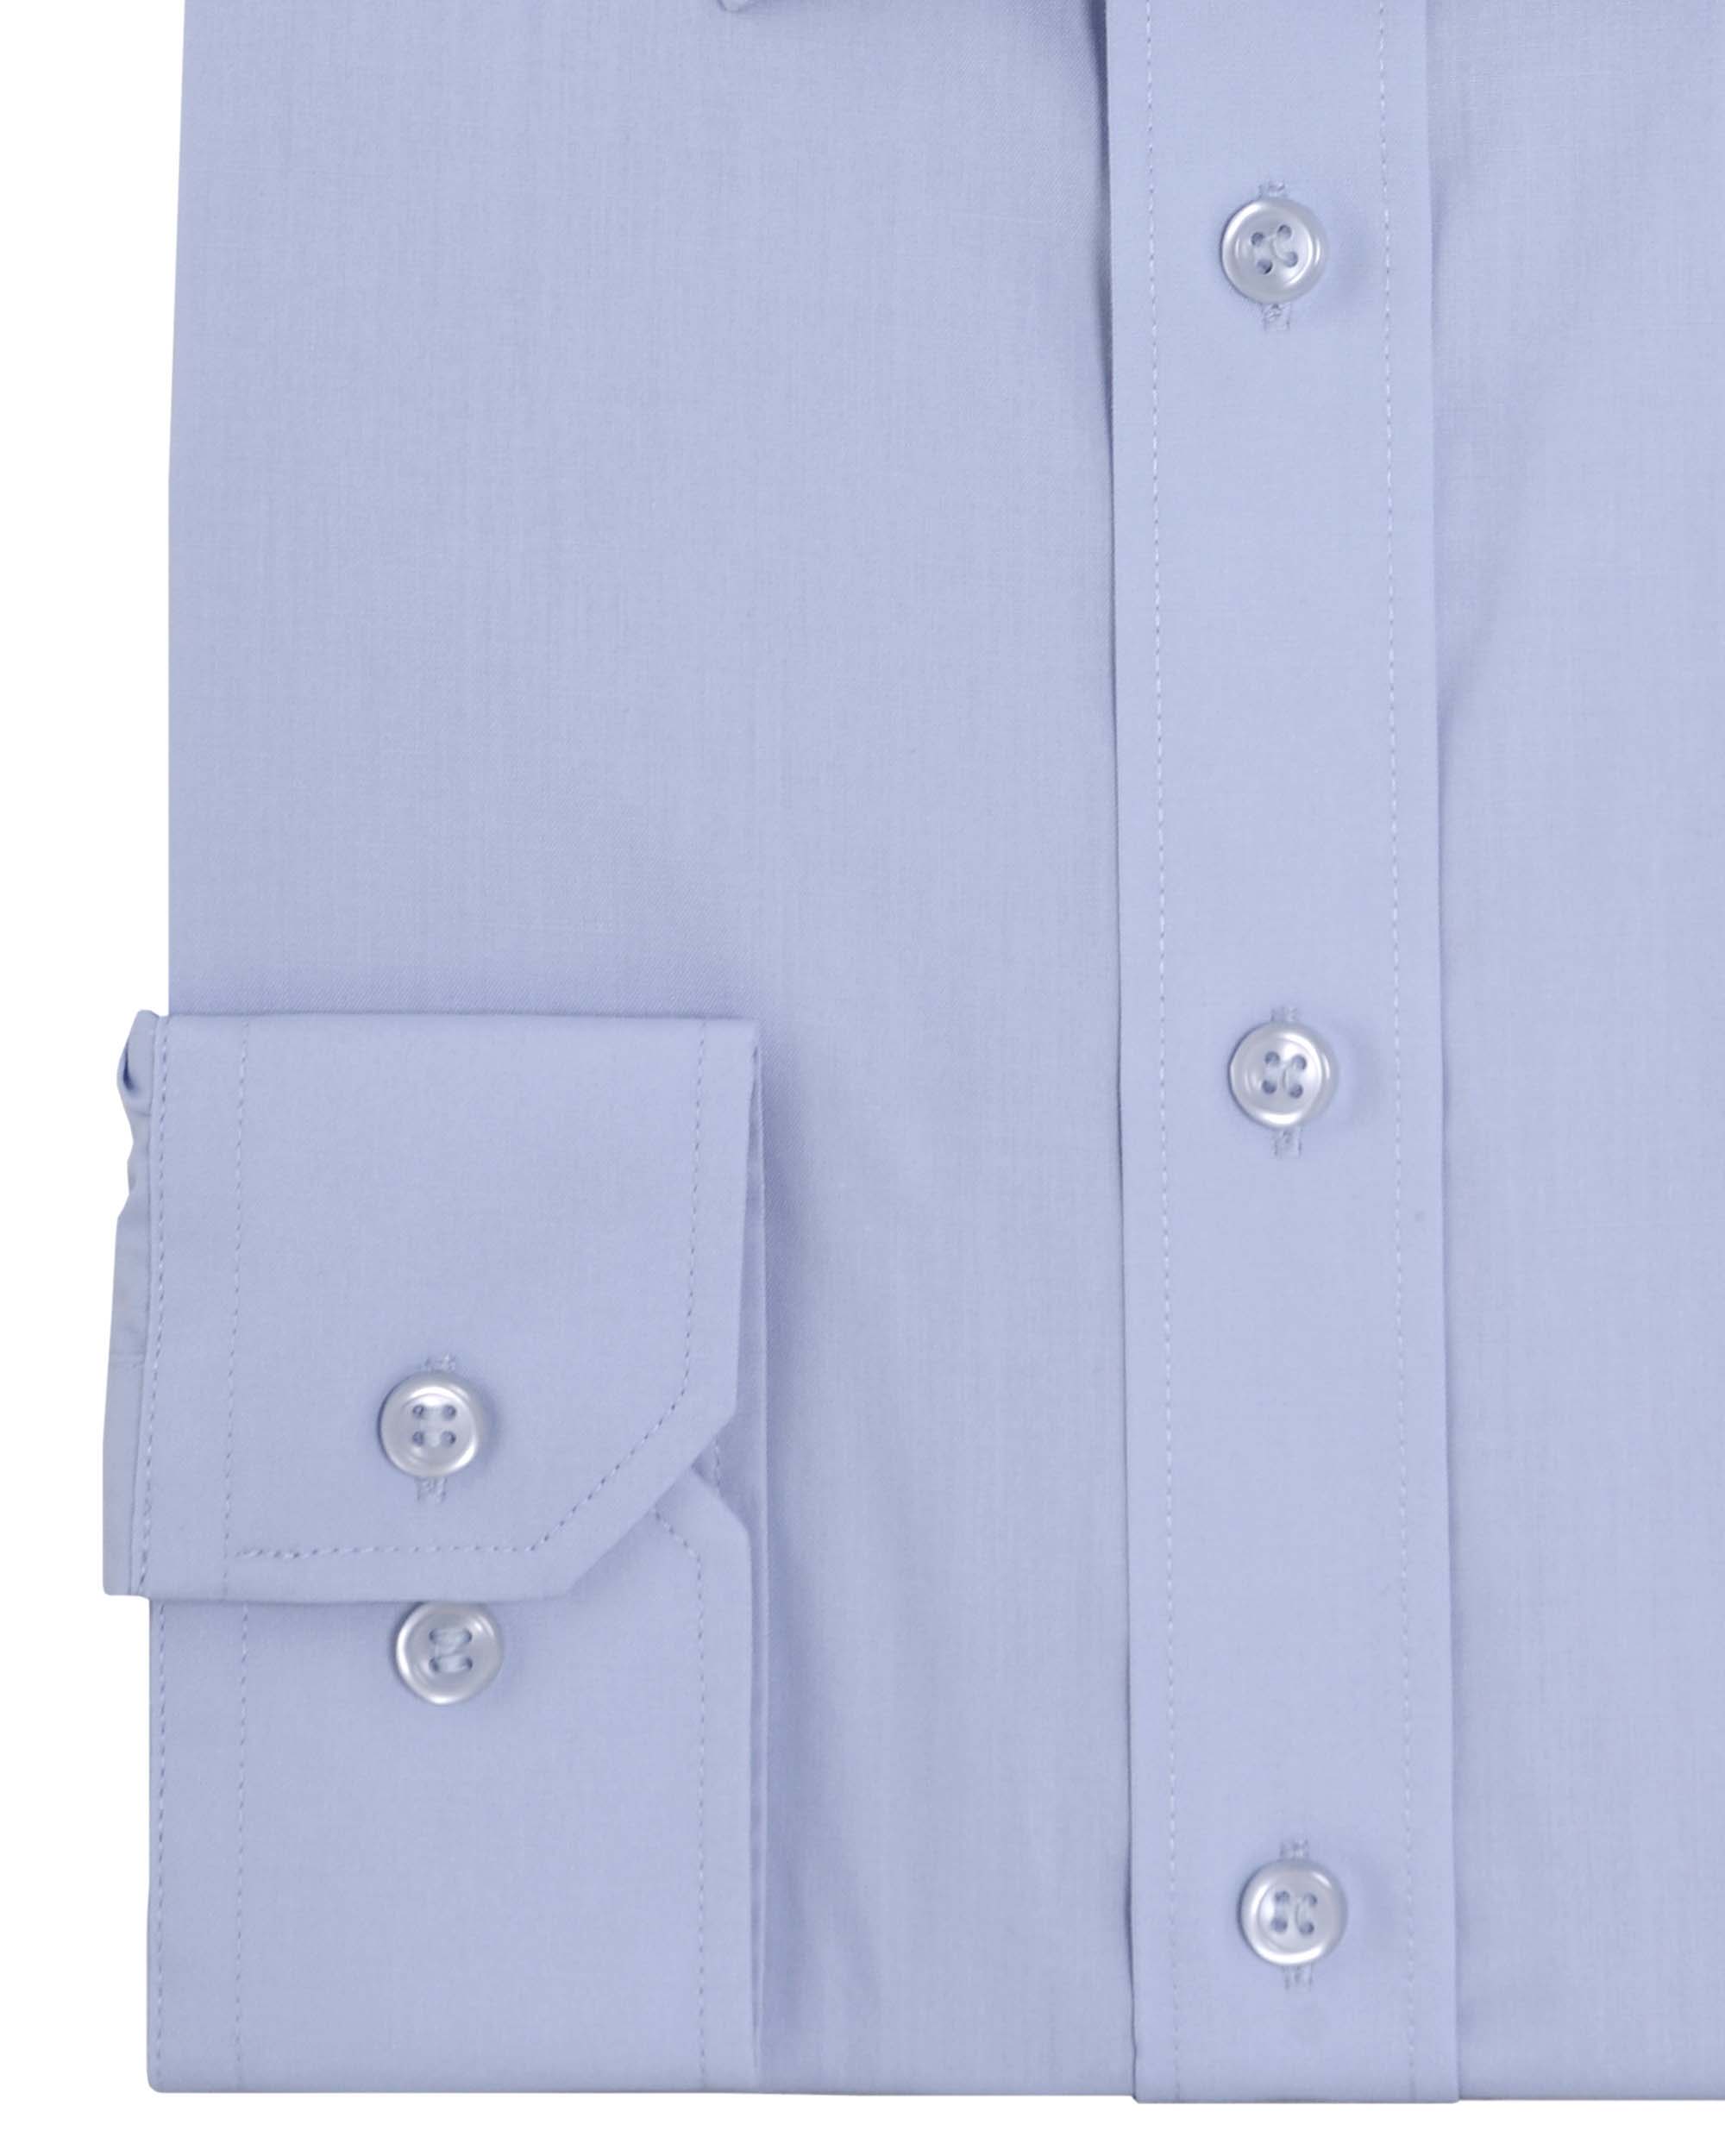 Men’s Double TWO Long Sleeve Single Cuff Poplin Shirt